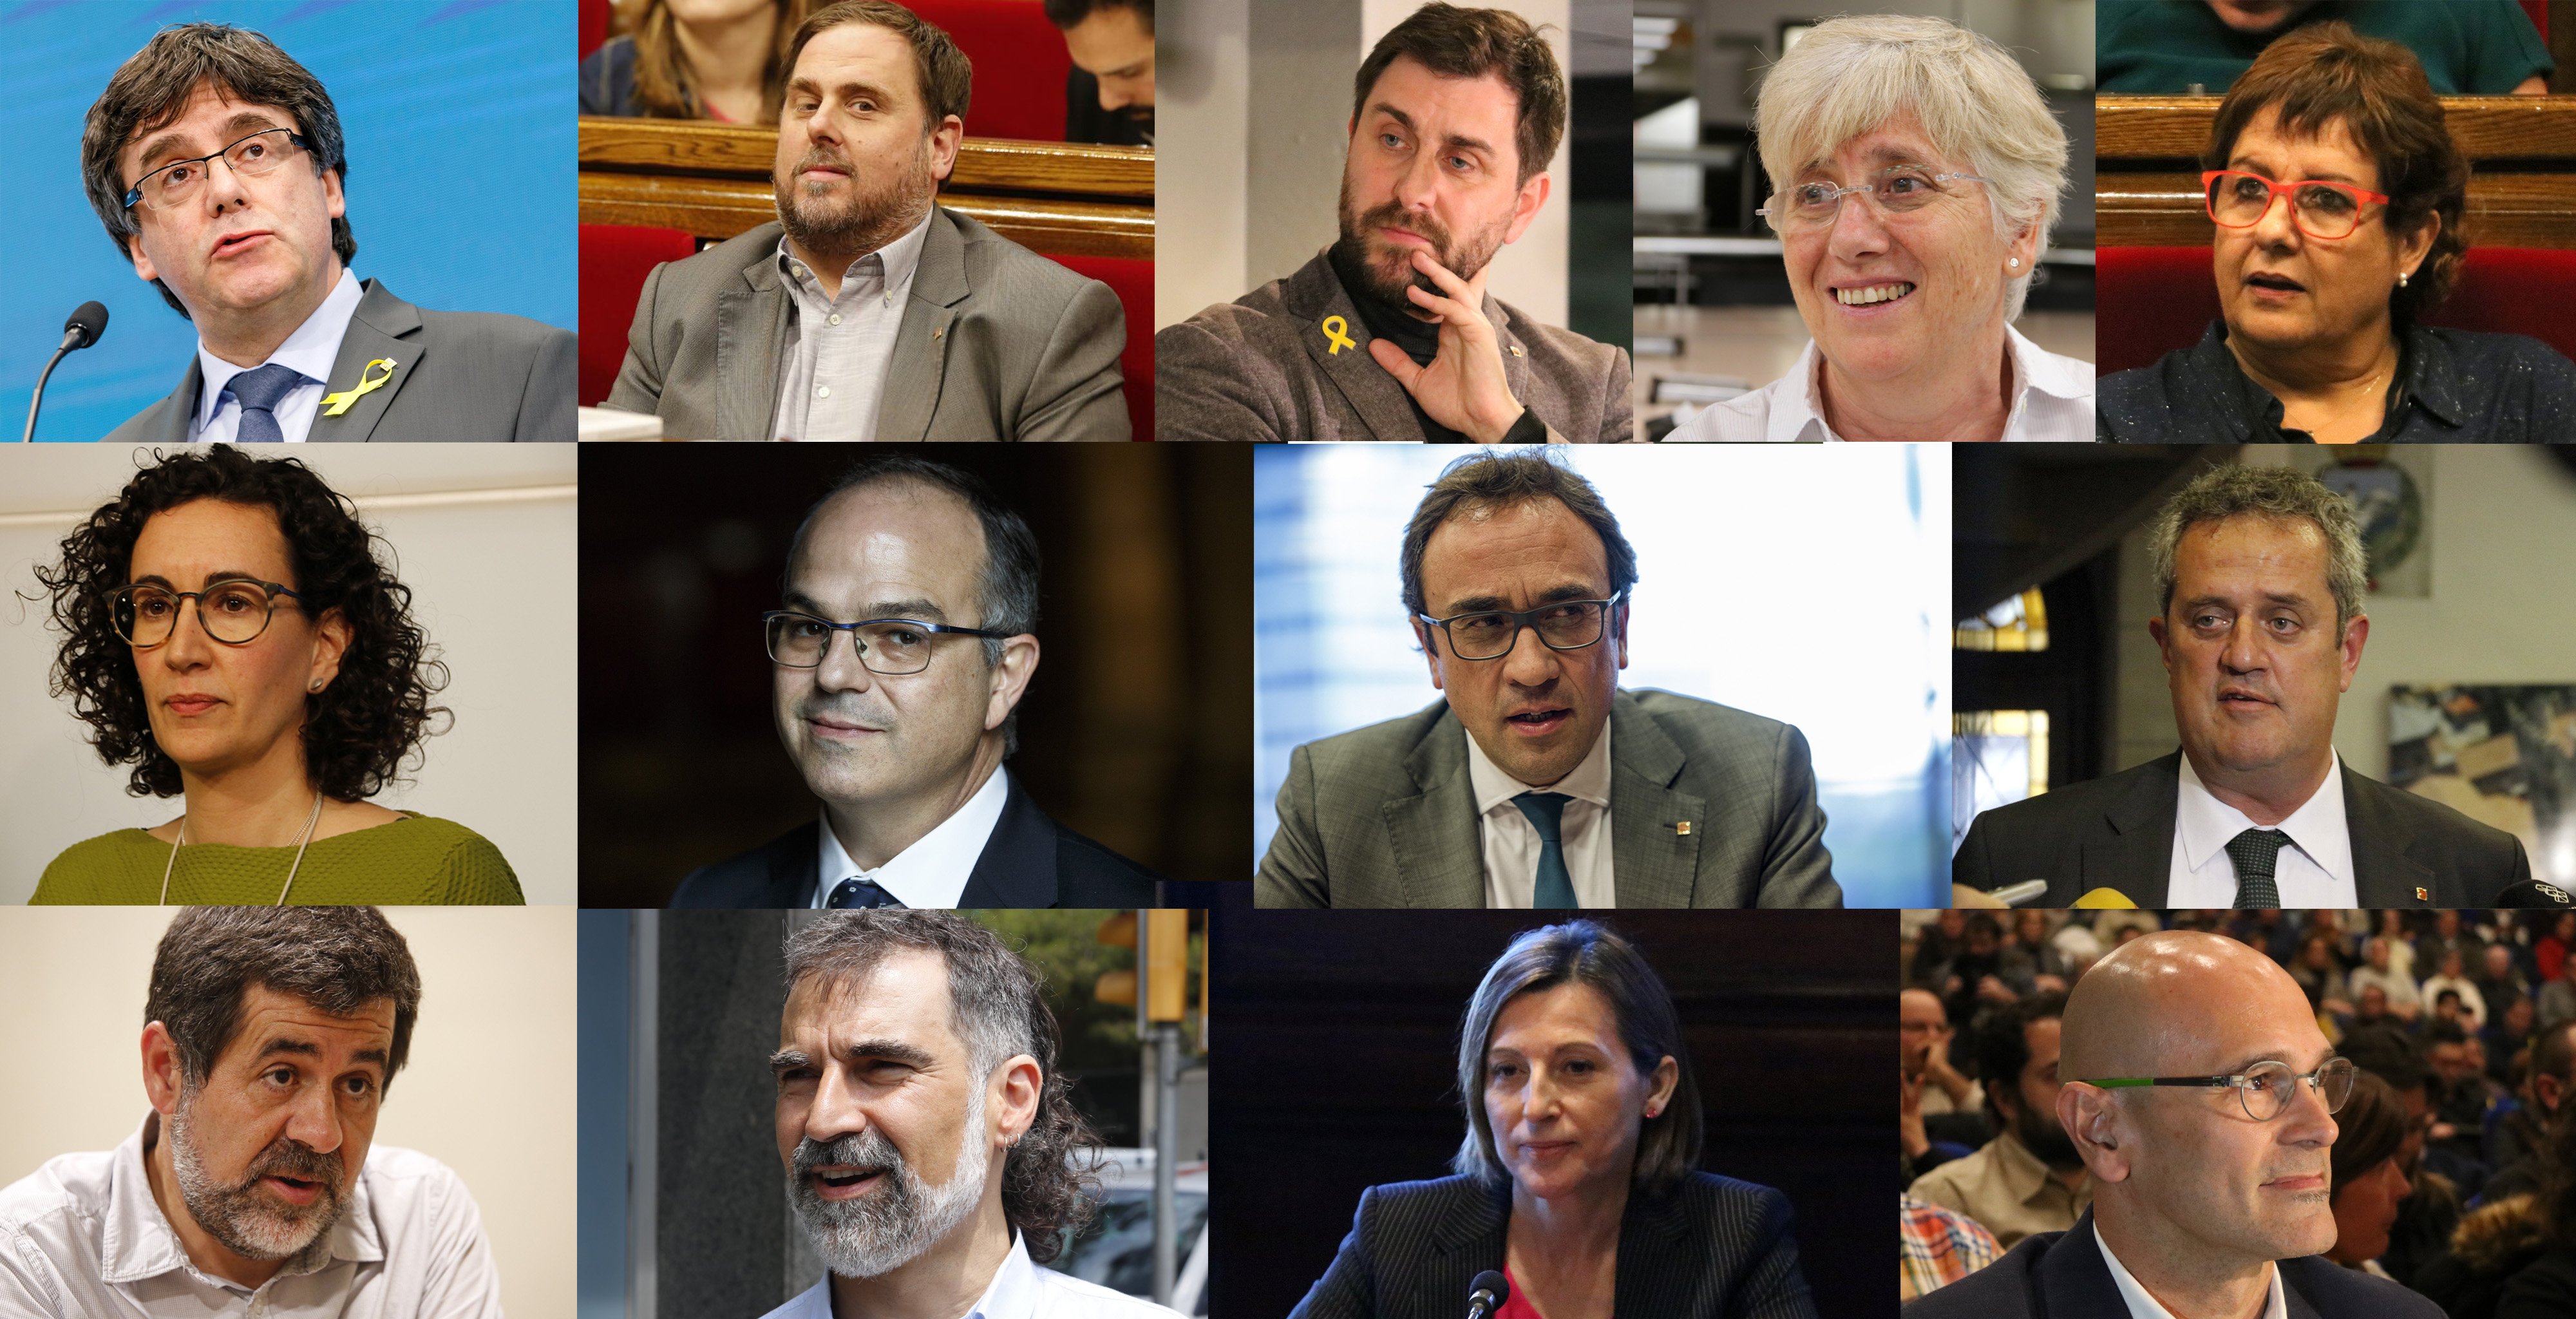 Llarena procesa por rebelión a Puigdemont, 9 consellers, los Jordis y Rovira